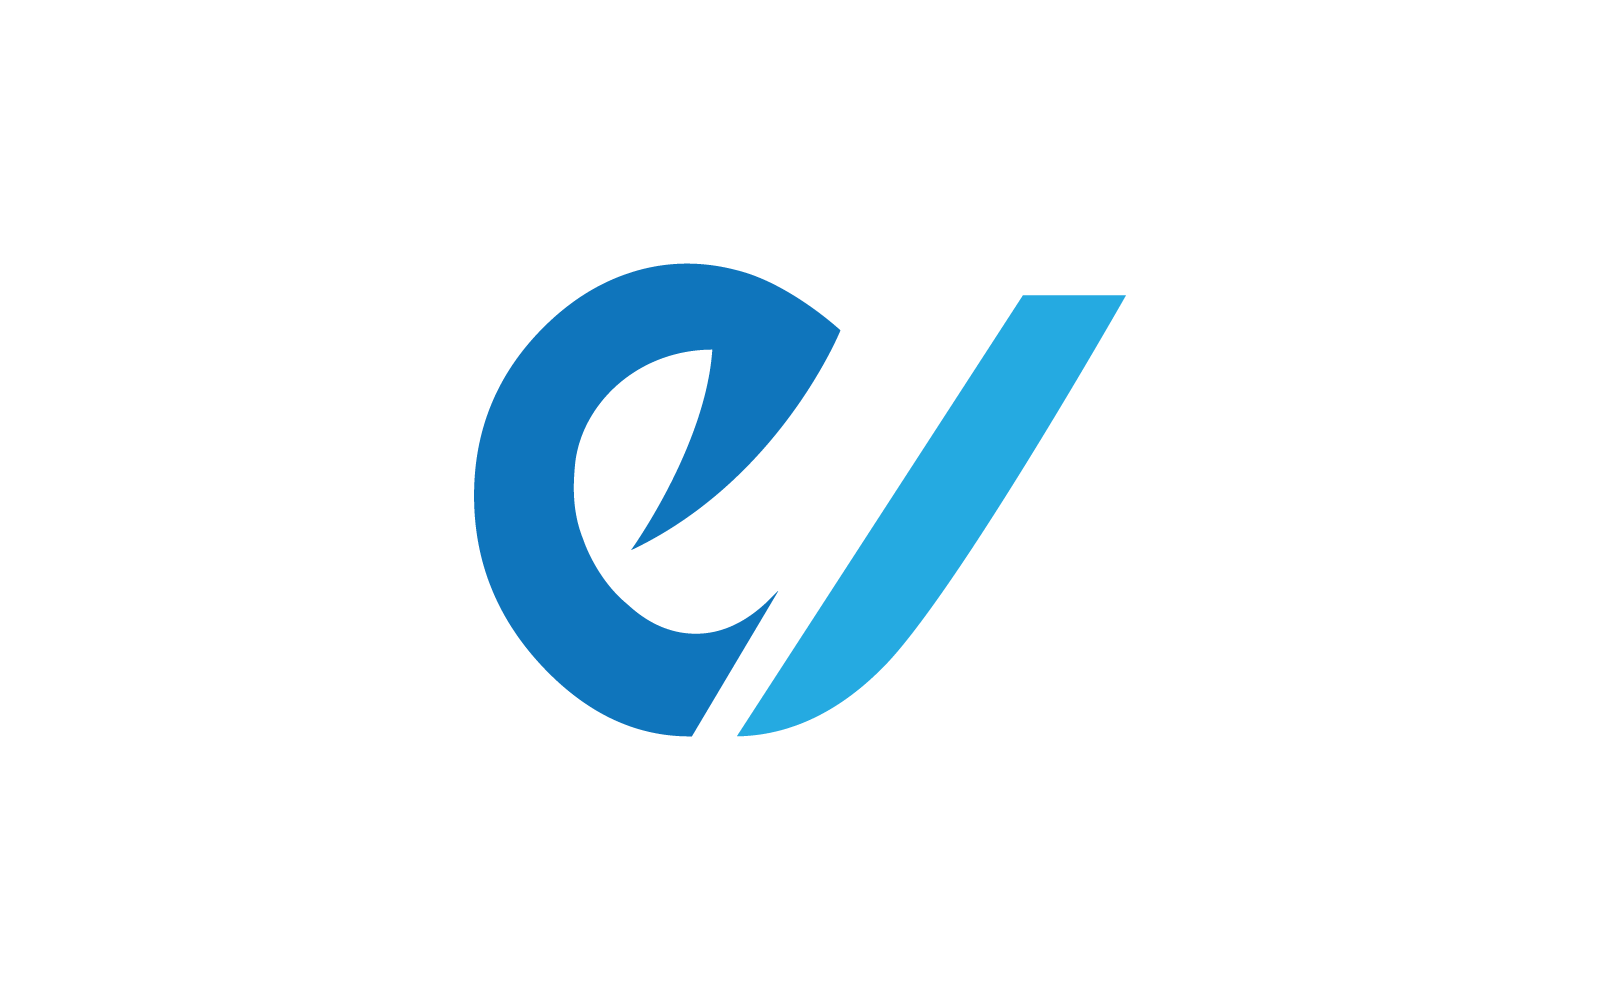 Moderno E Iniziale, lettera, disegno vettoriale del logo del carattere alfabetico